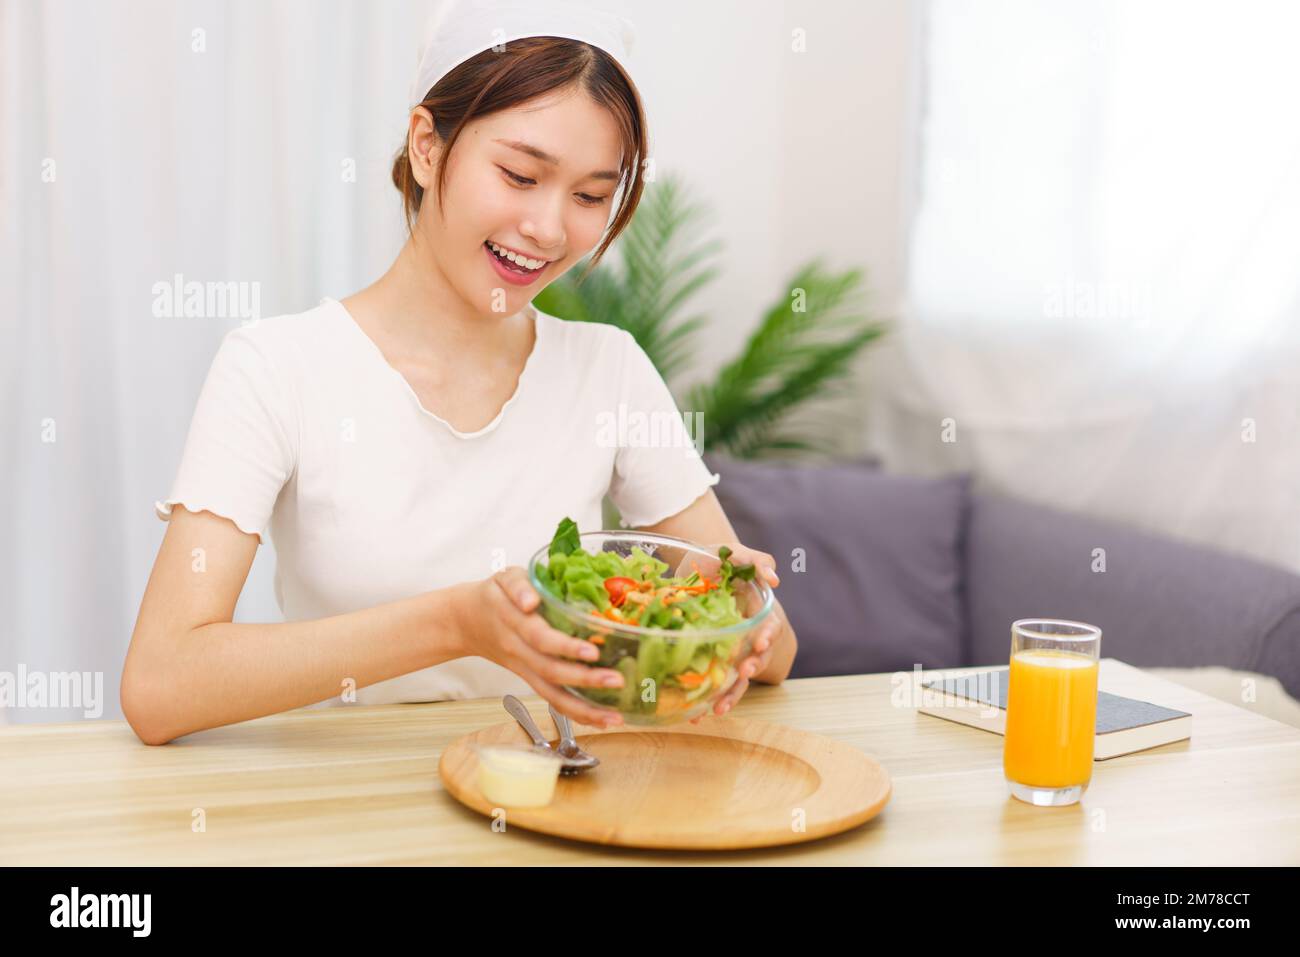 Estilo de vida en el concepto de sala de estar, mujer asiática joven sonriendo y sosteniendo un tazón de ensalada de verduras. Foto de stock